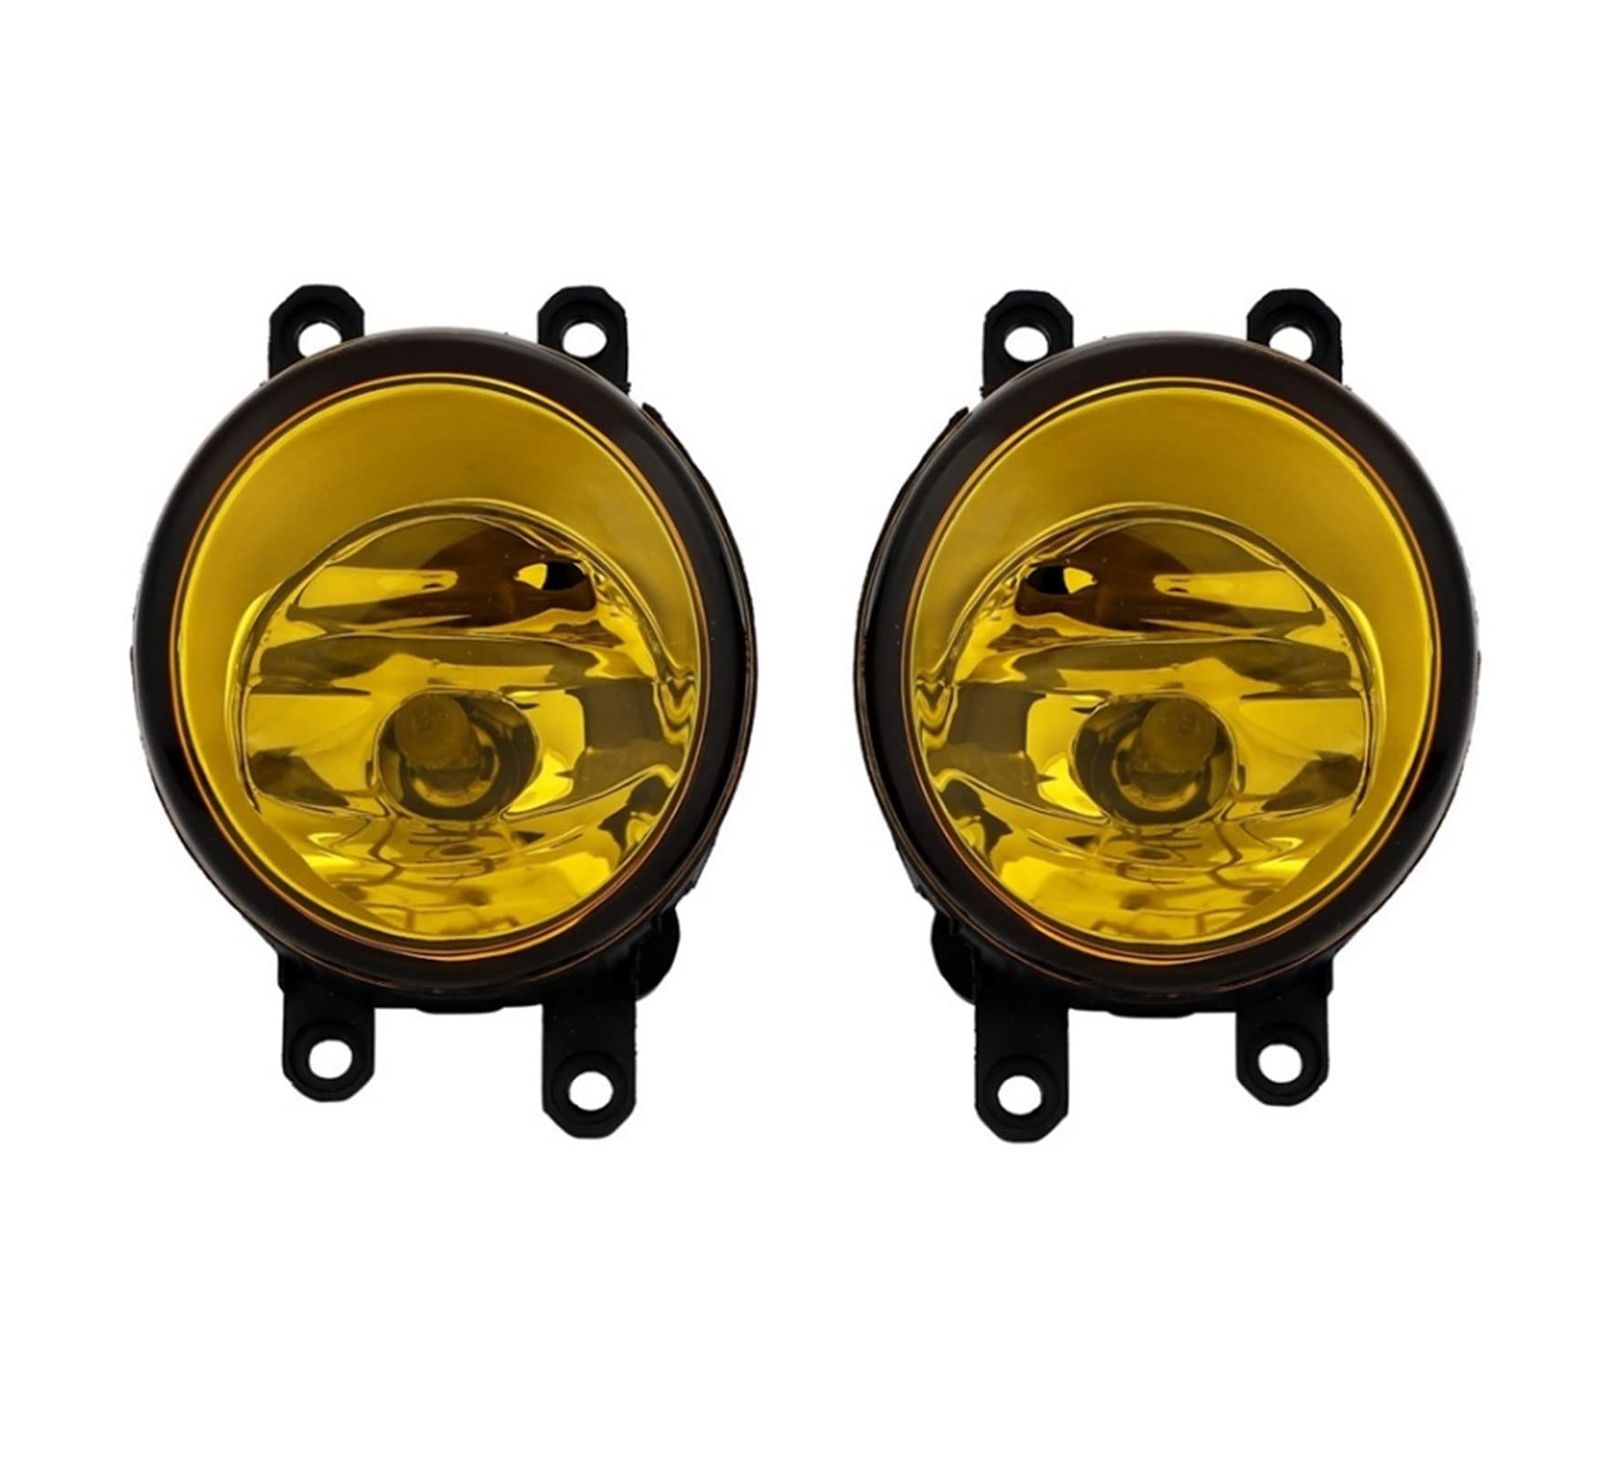 トヨタ 黄色レンズフォグランプ ユニット 汎用 社外品 HID LED 純正サイズ交換用 H8 H11 H16 ガラス レンズ 互換 LR セット  (イエロー) [イエロー] - メルカリ